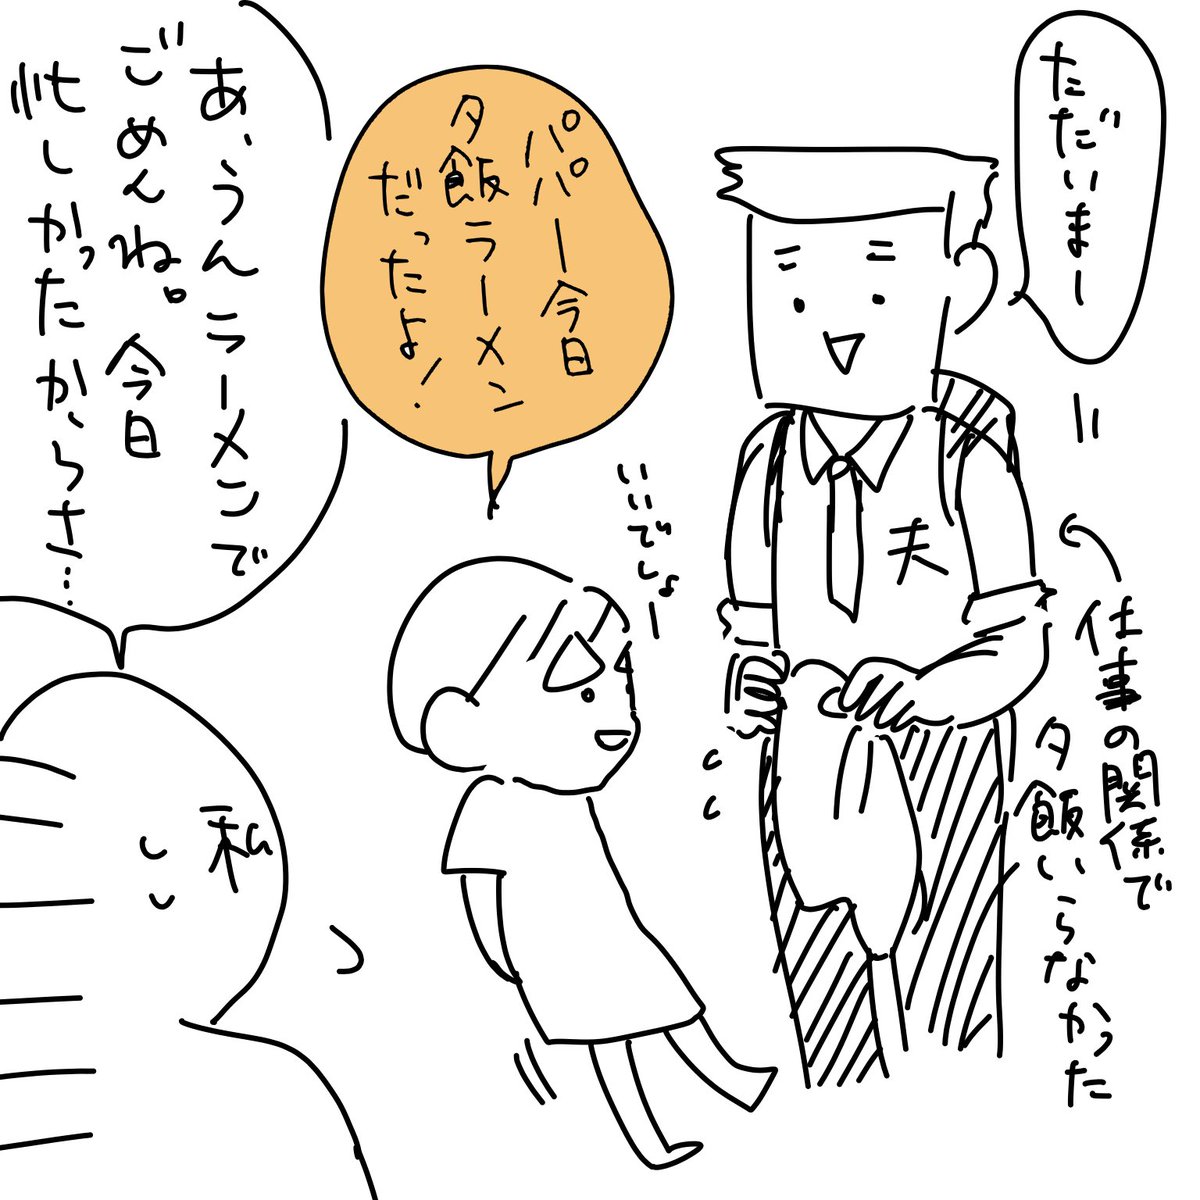 育児日記。

東京のスーパーって、エースコックのワンタン麺売ってる?うちの近所のスーパー3ヶ所は軒並み置いてない。あのオレンジ色でコックさんの服着たブタさんが描いてある袋麺のやつ。

#5歳 